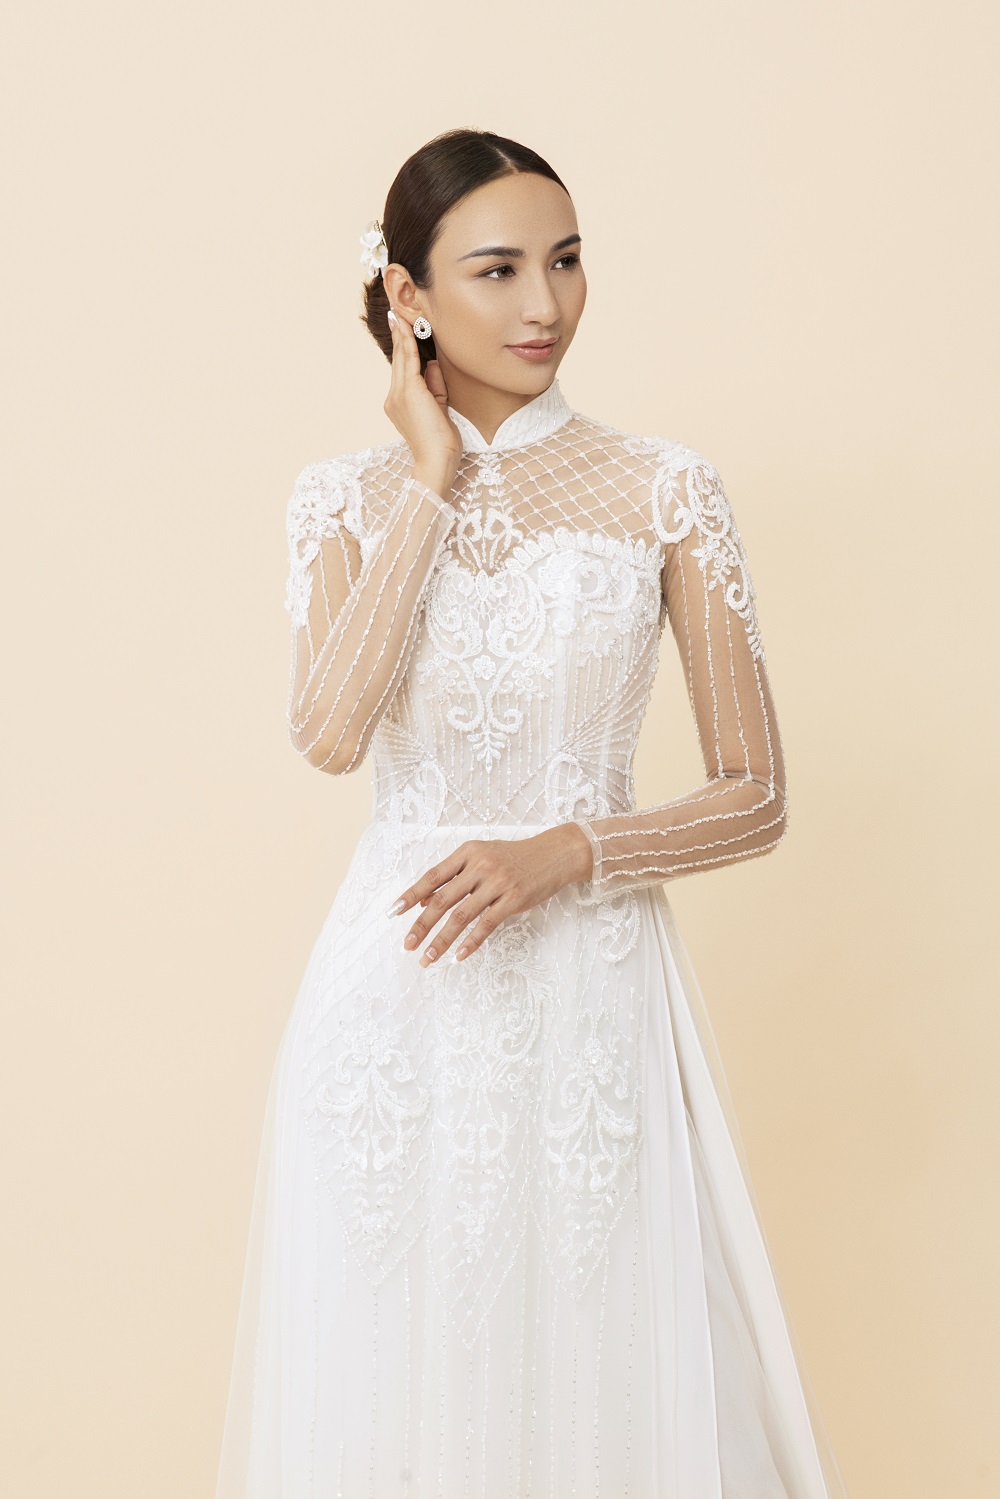 Các bà xui đẹp lên bội phần trong đám cưới khi NTK Minh Châu tung loạt áo dài sang trọng, đẳng cấp